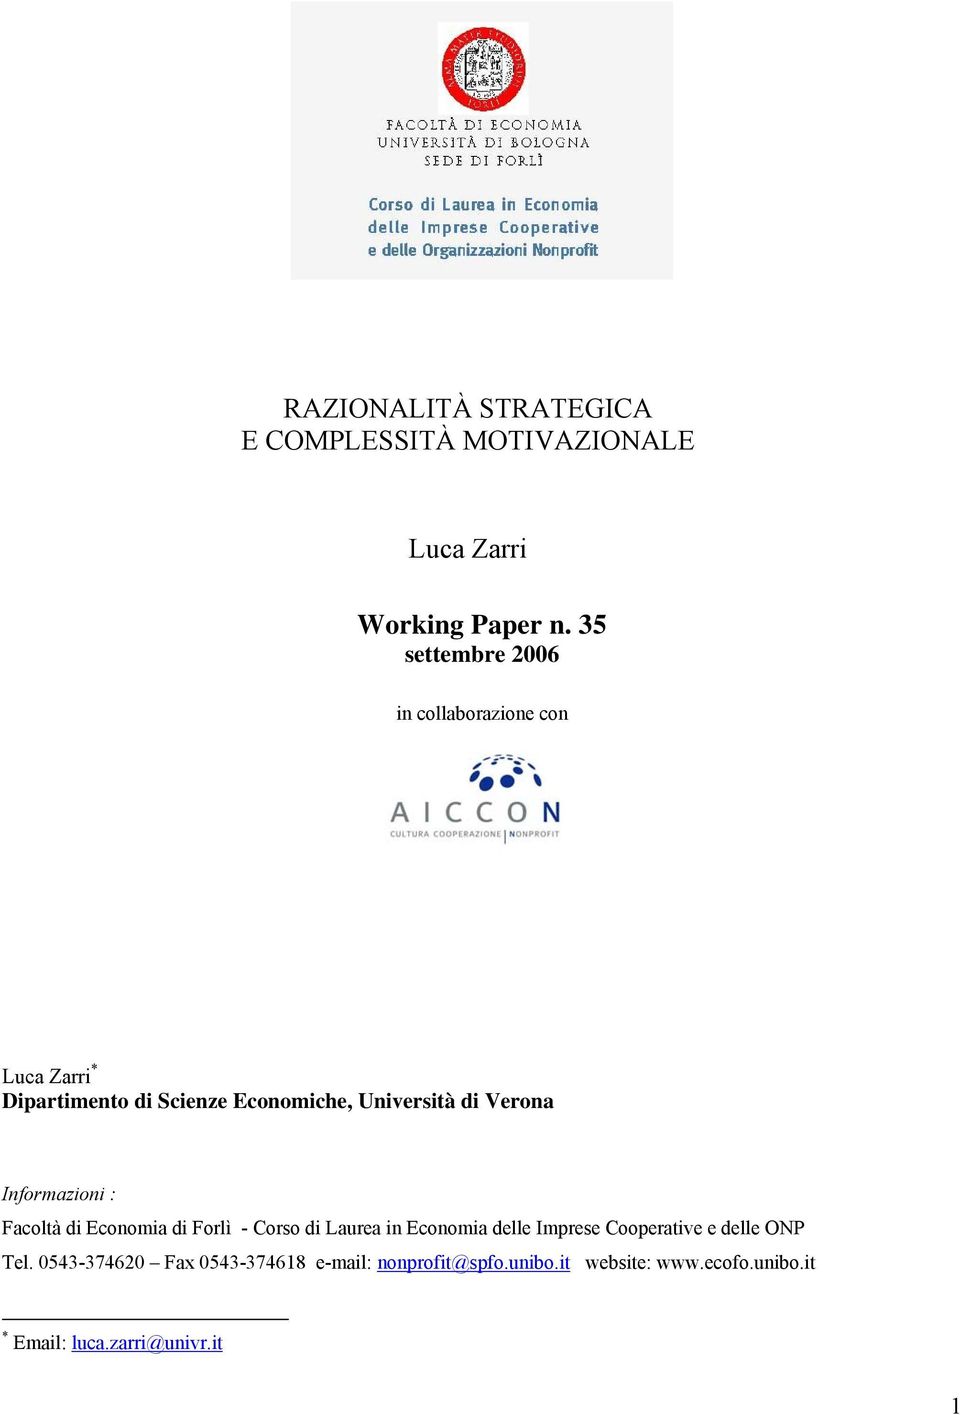 Verona Informazioni : Facoltà di Economia di Forlì - Corso di Laurea in Economia delle Imprese